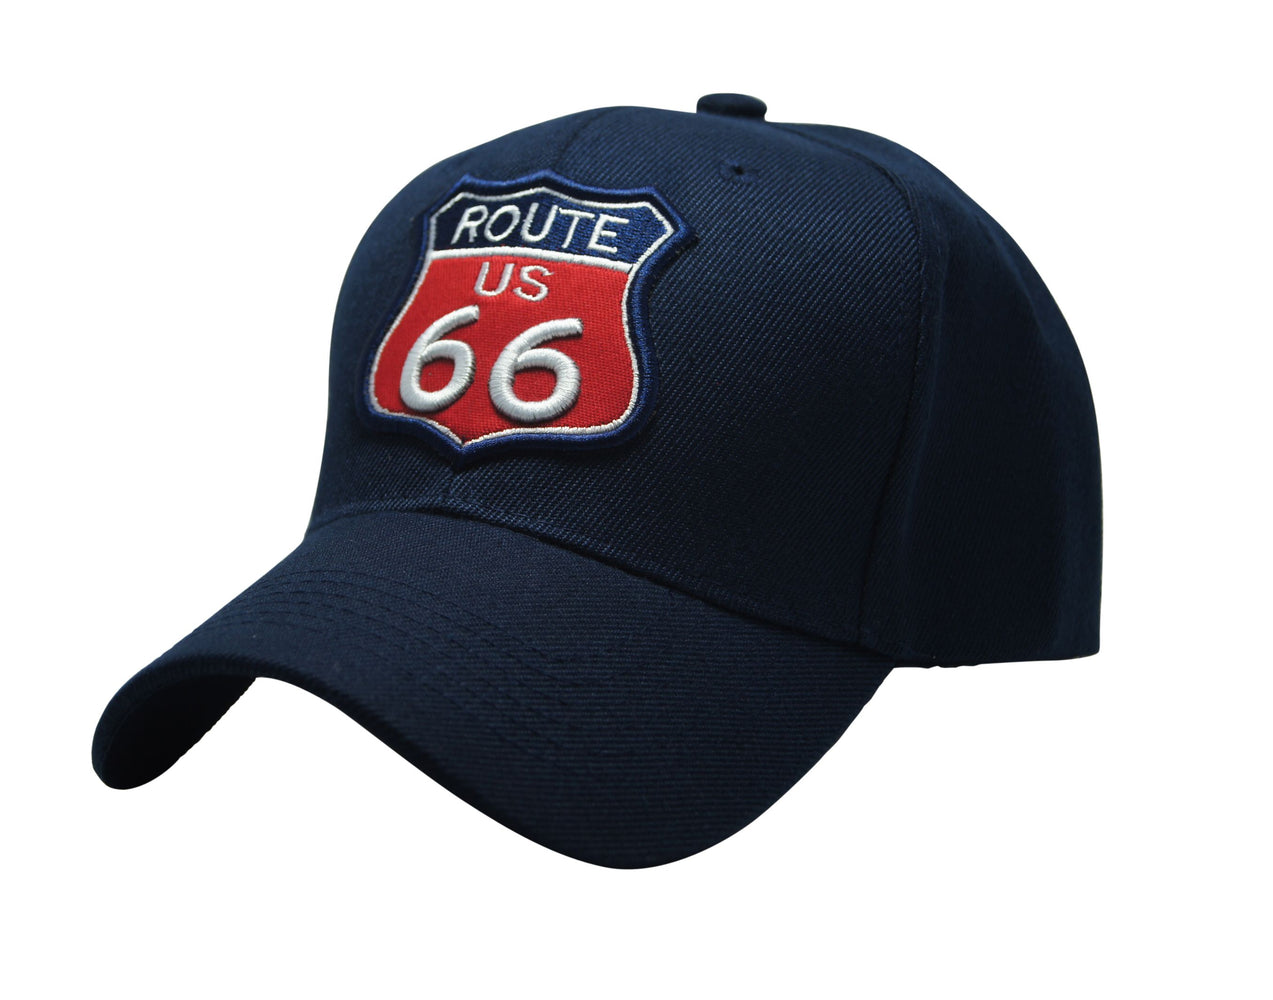 "Famous Route 66" 3D Embroidery Emblem